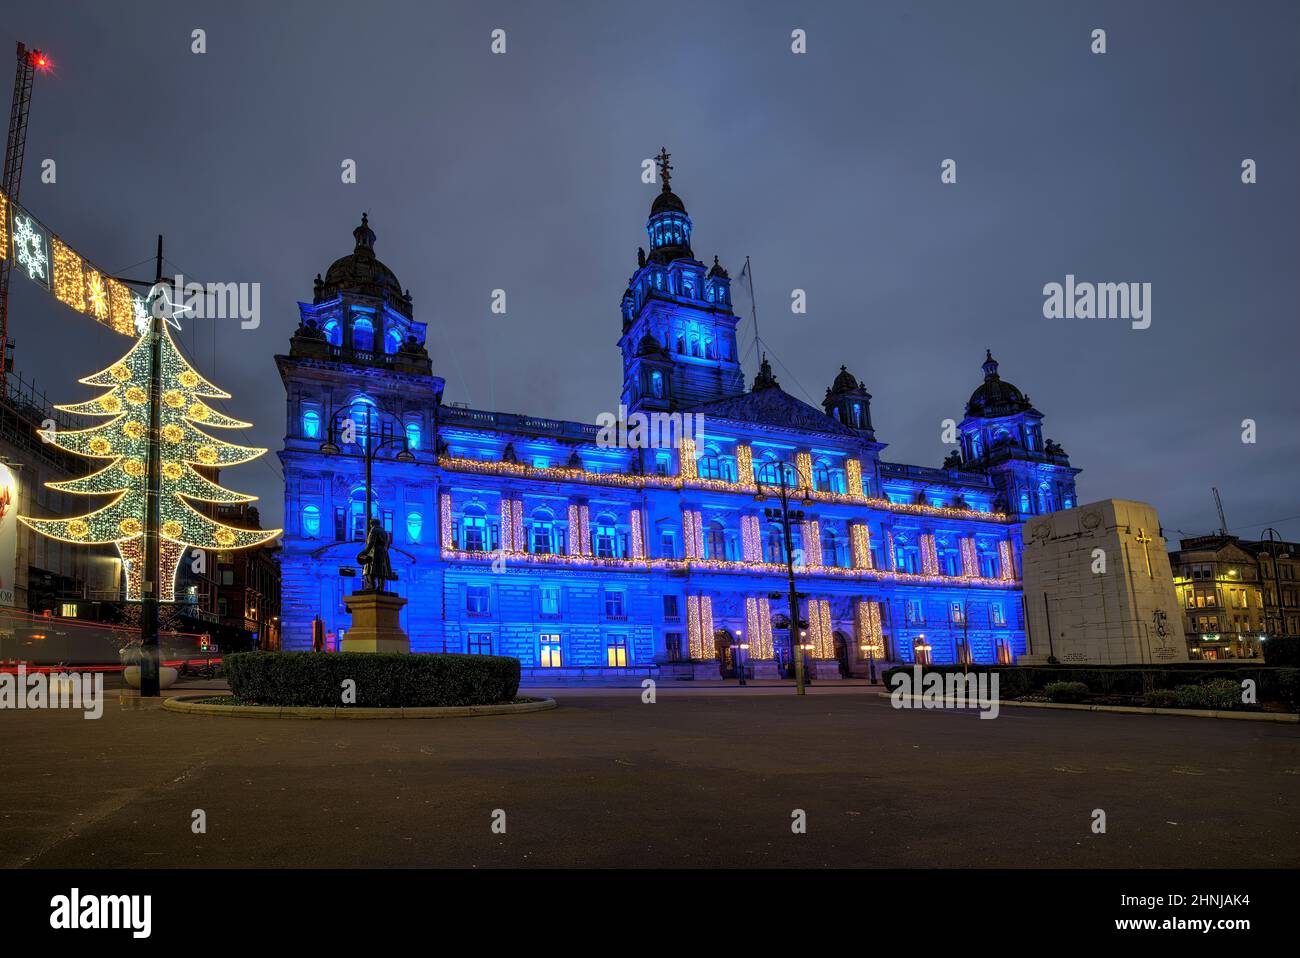 Die Glasgow City Chambers auf dem George Square beleuchteten ip während der Veranstaltung in Glasgow. Stockfoto